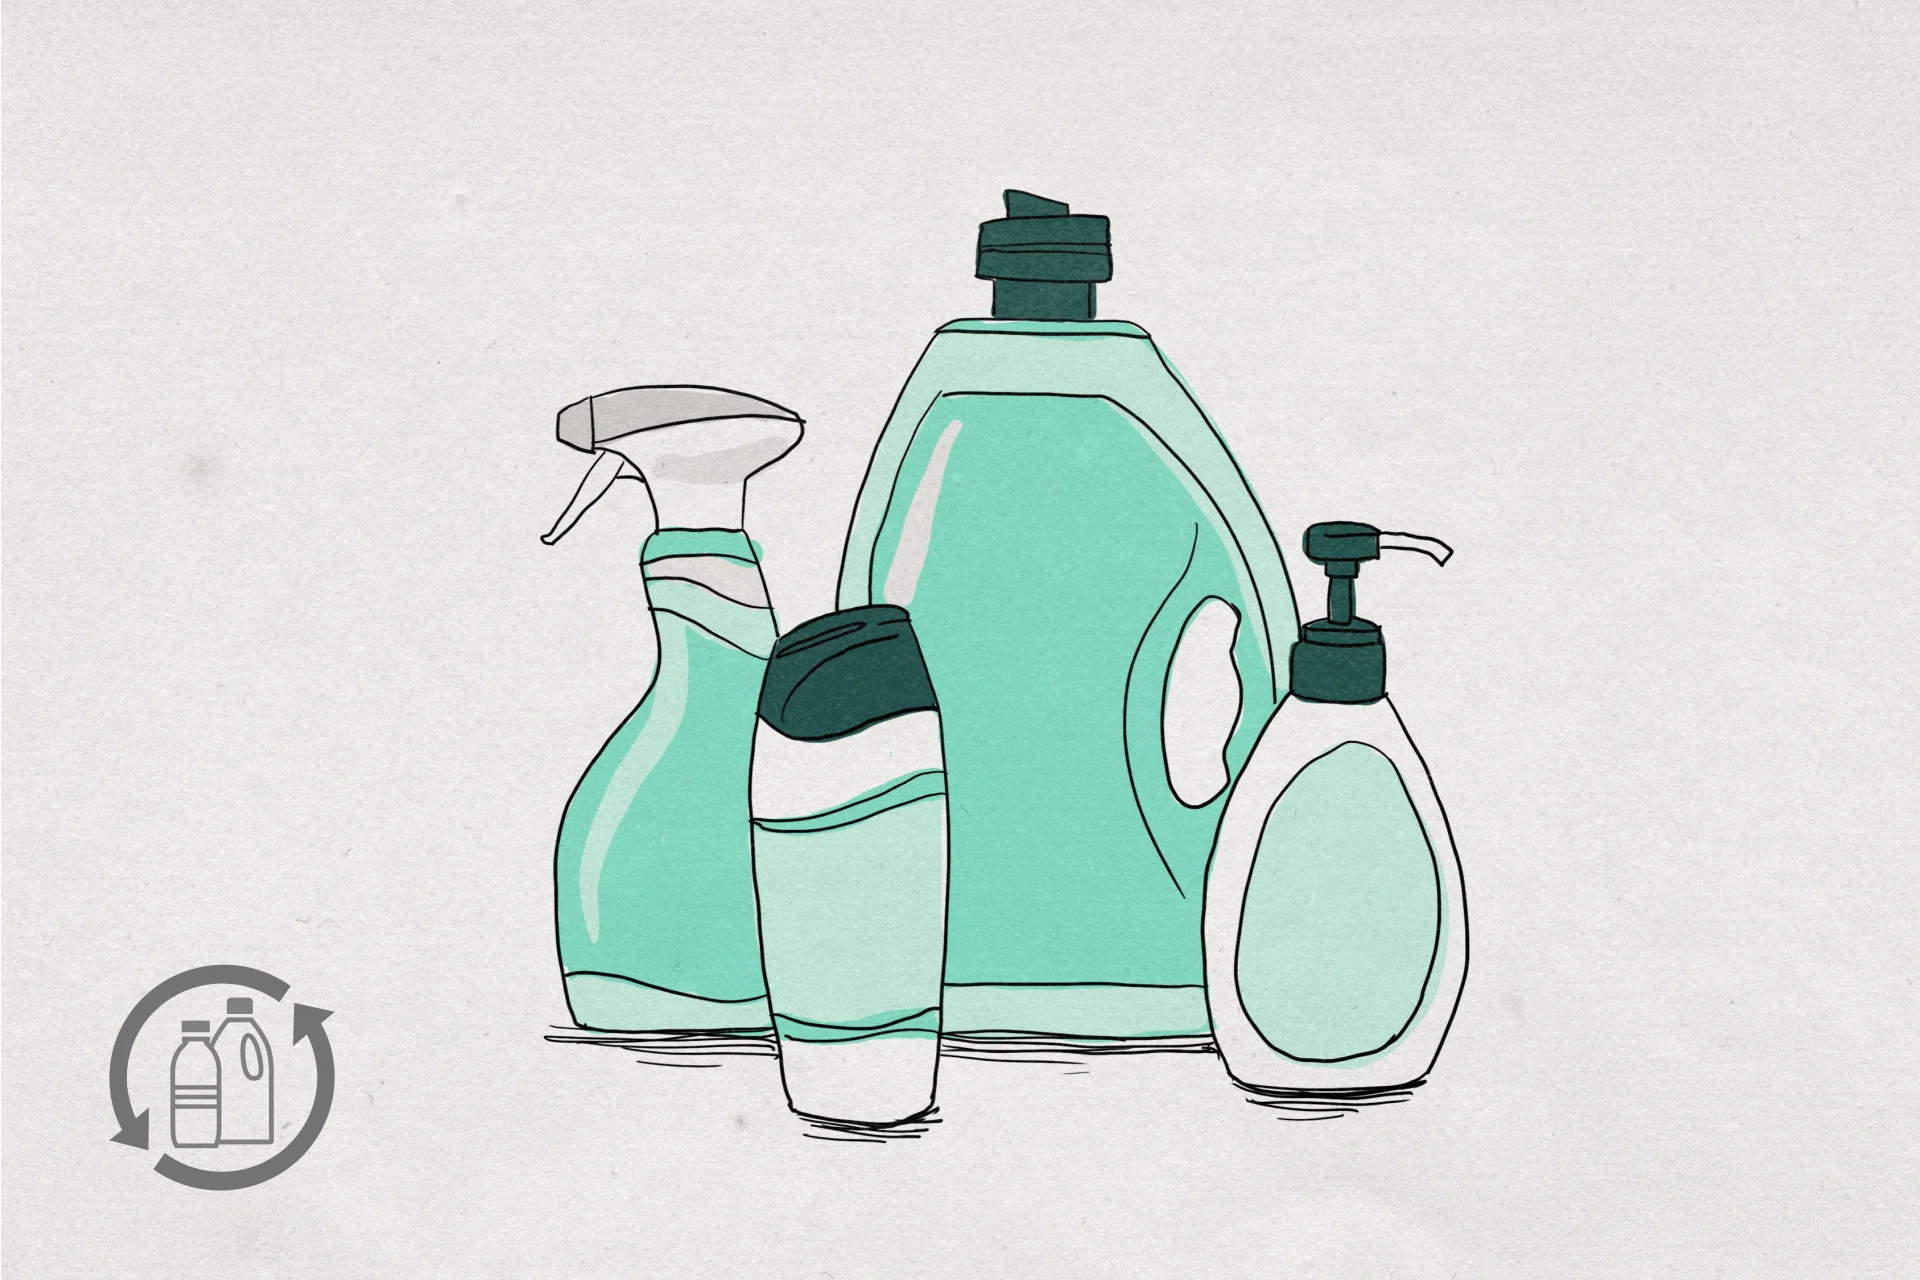 Image de bouteilles en plastique vides de gels douche, shampooings, produits de lessive et de nettoyage